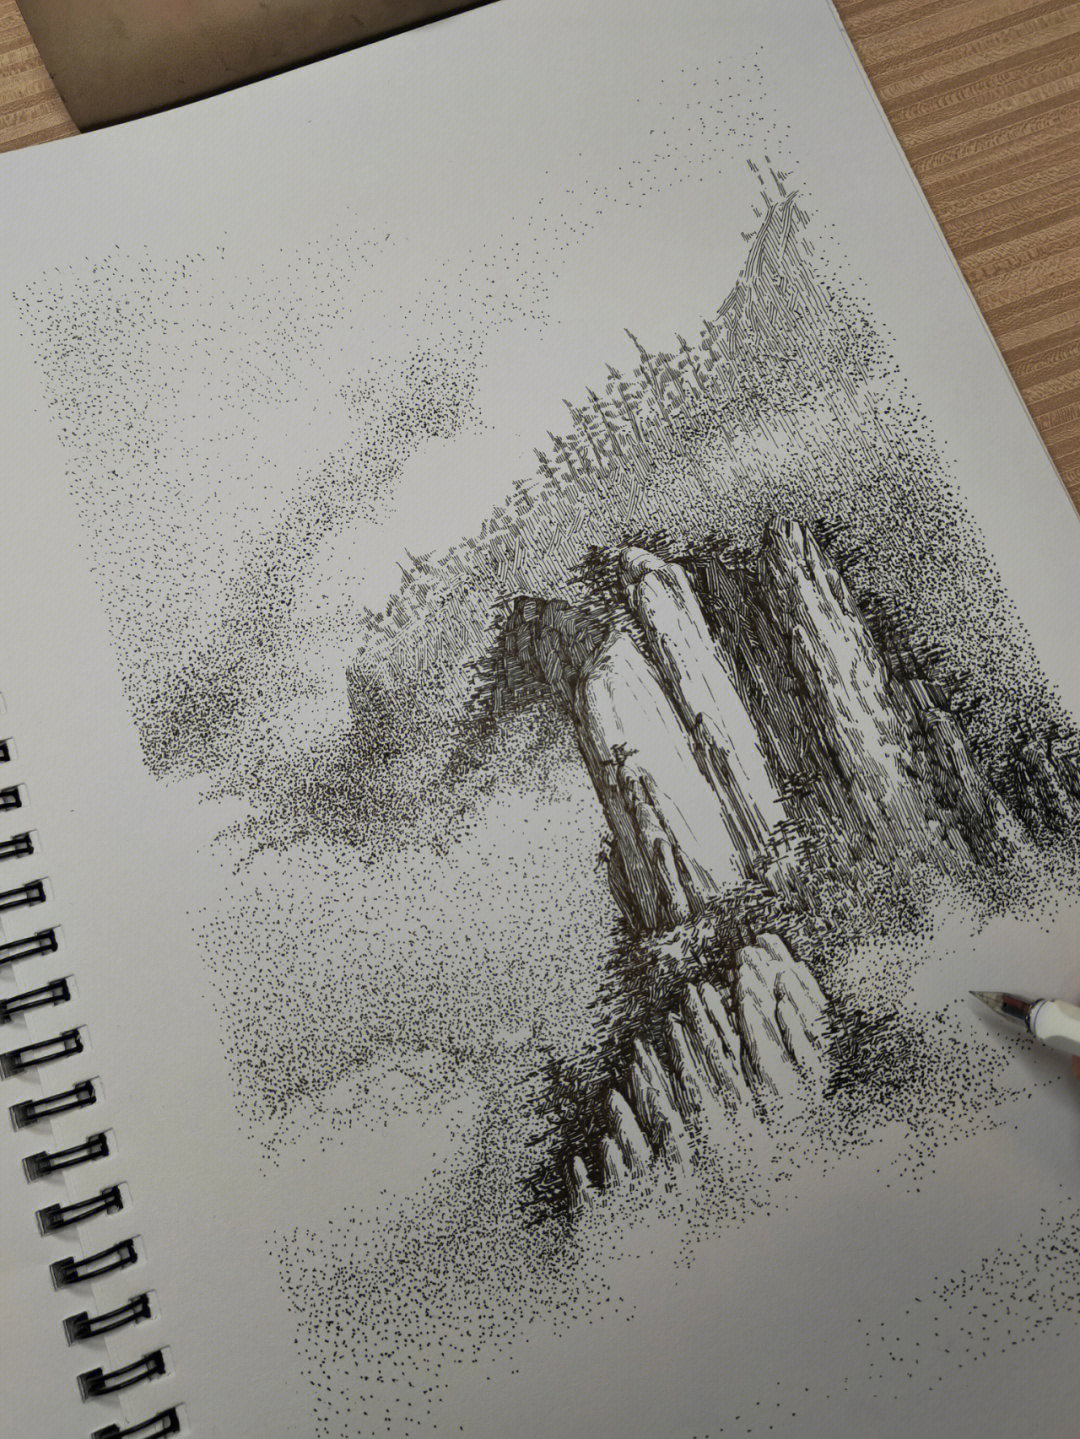 尝试用硬笔画一幅山水泼墨效果的钢笔画,感觉不一样的效果